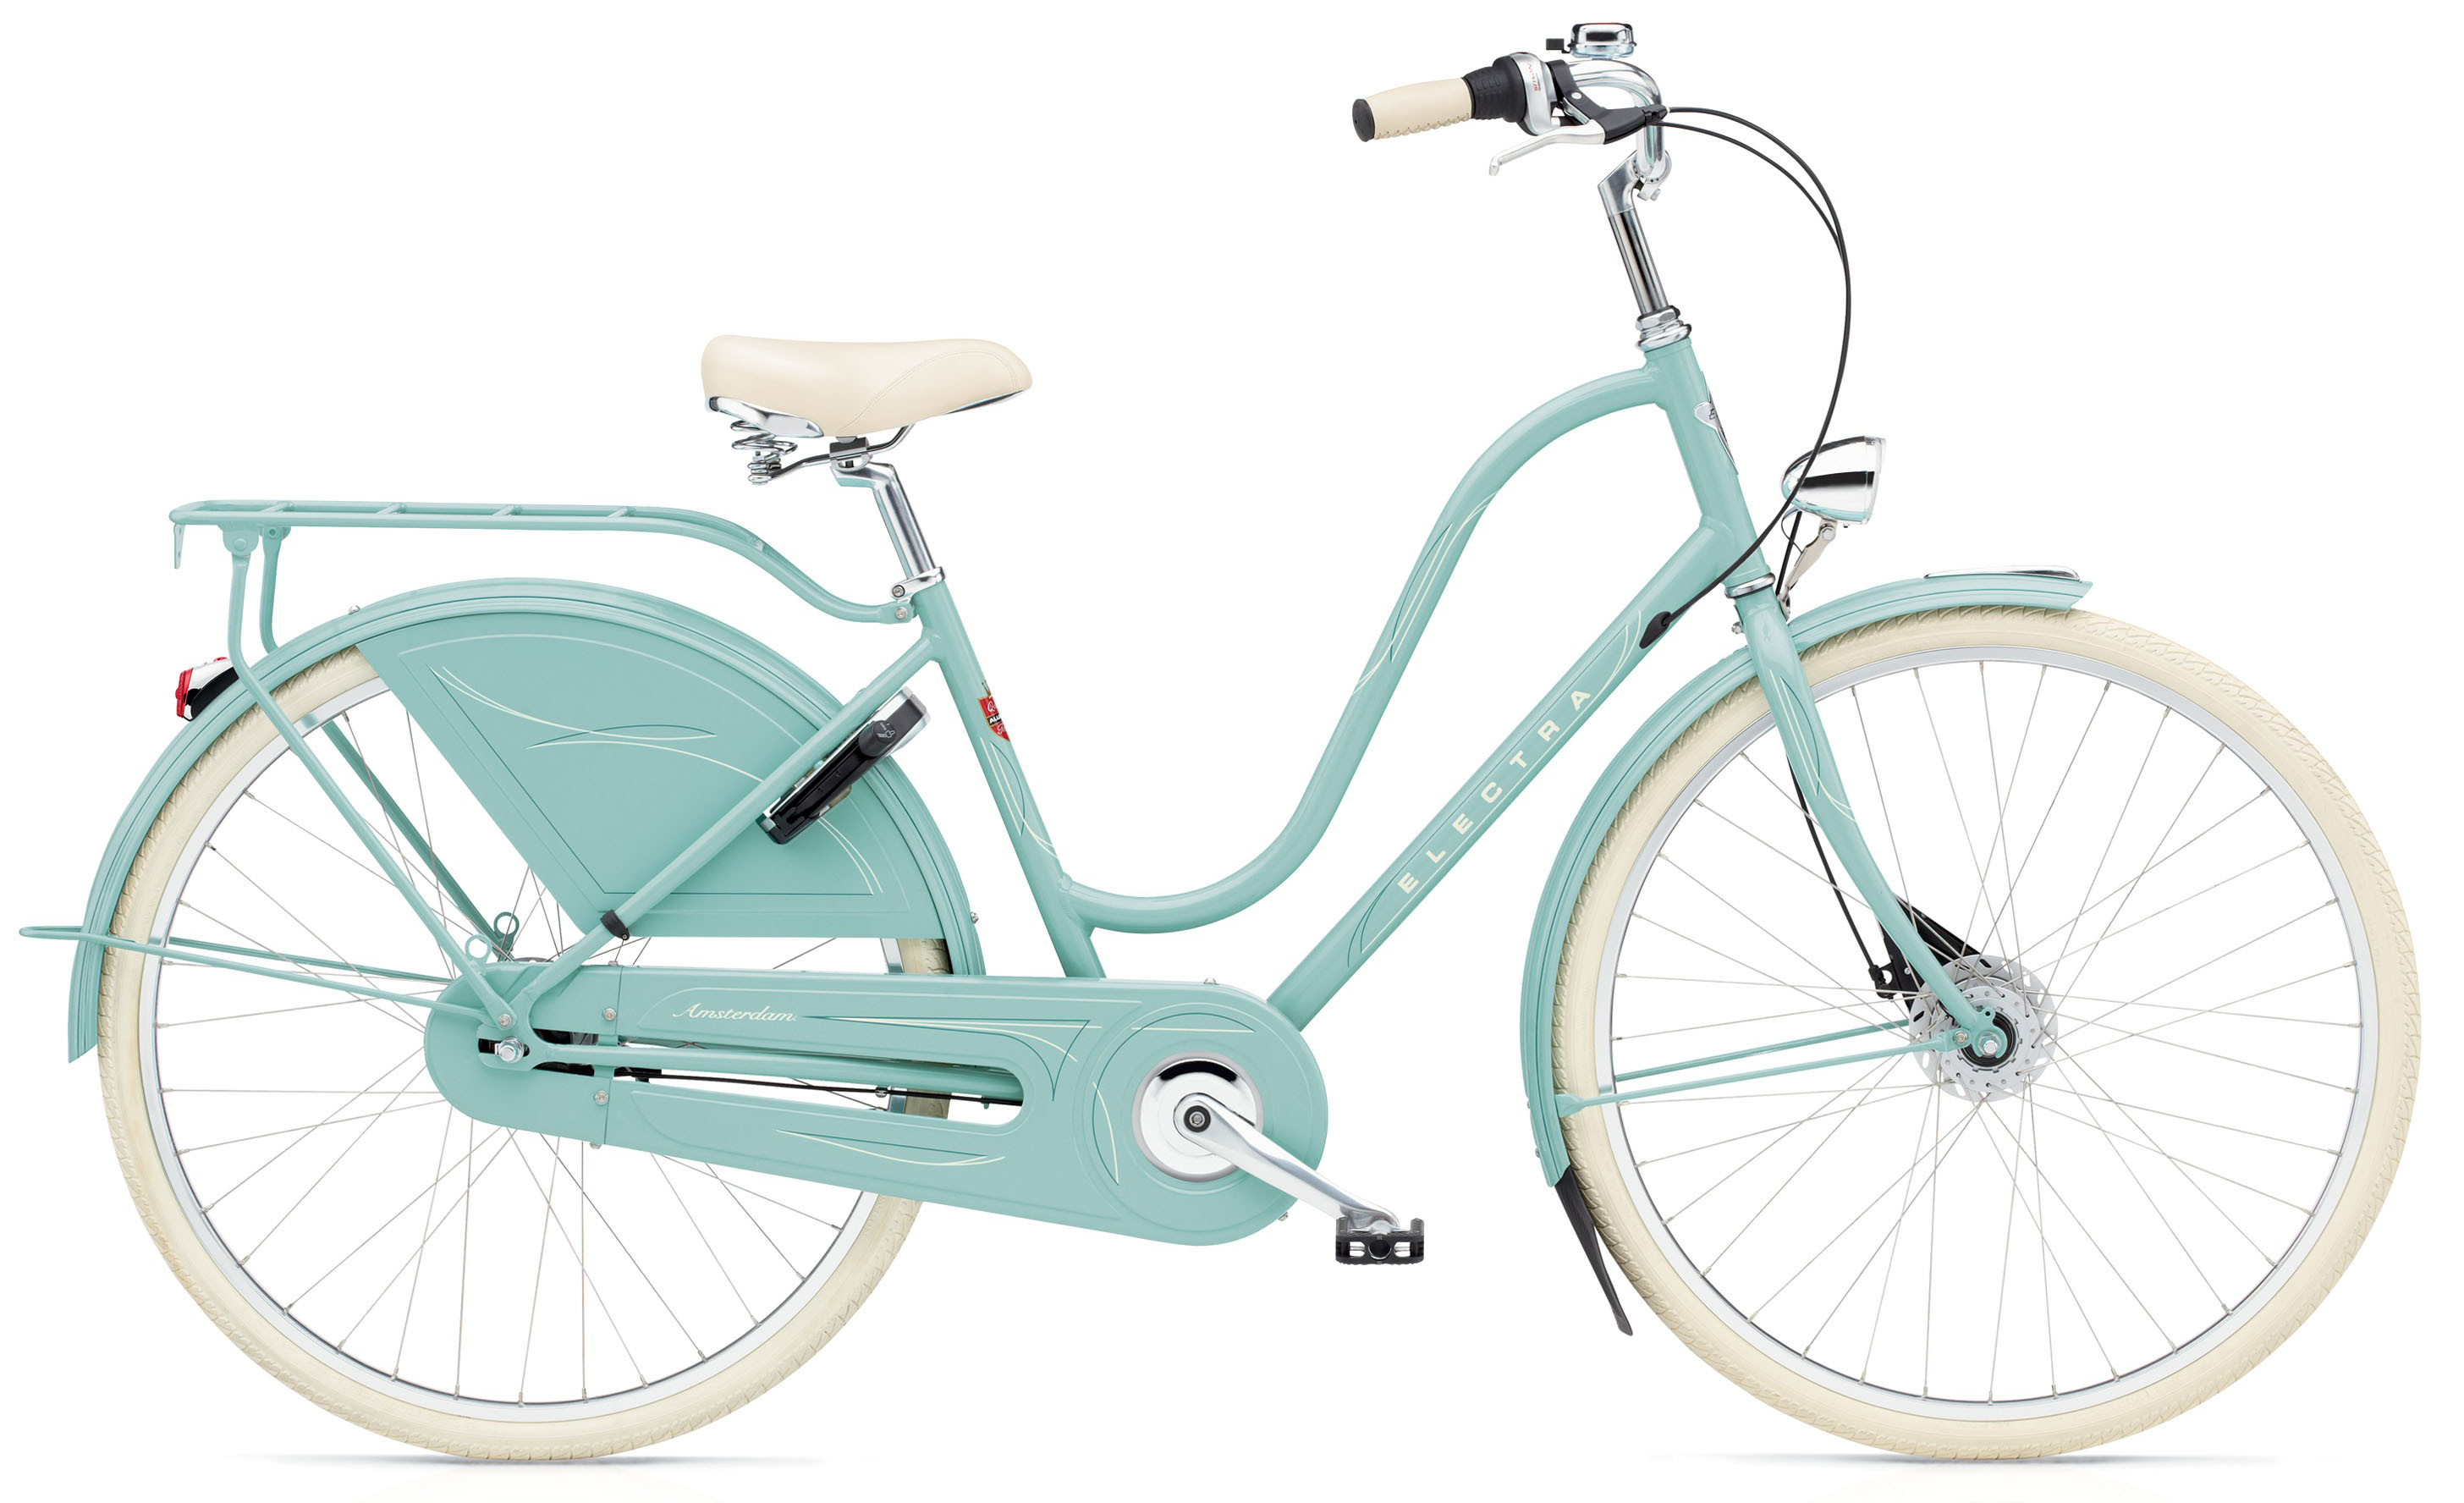  Отзывы о Женском велосипеде Electra Amsterdam Royal 8i ladies 2019